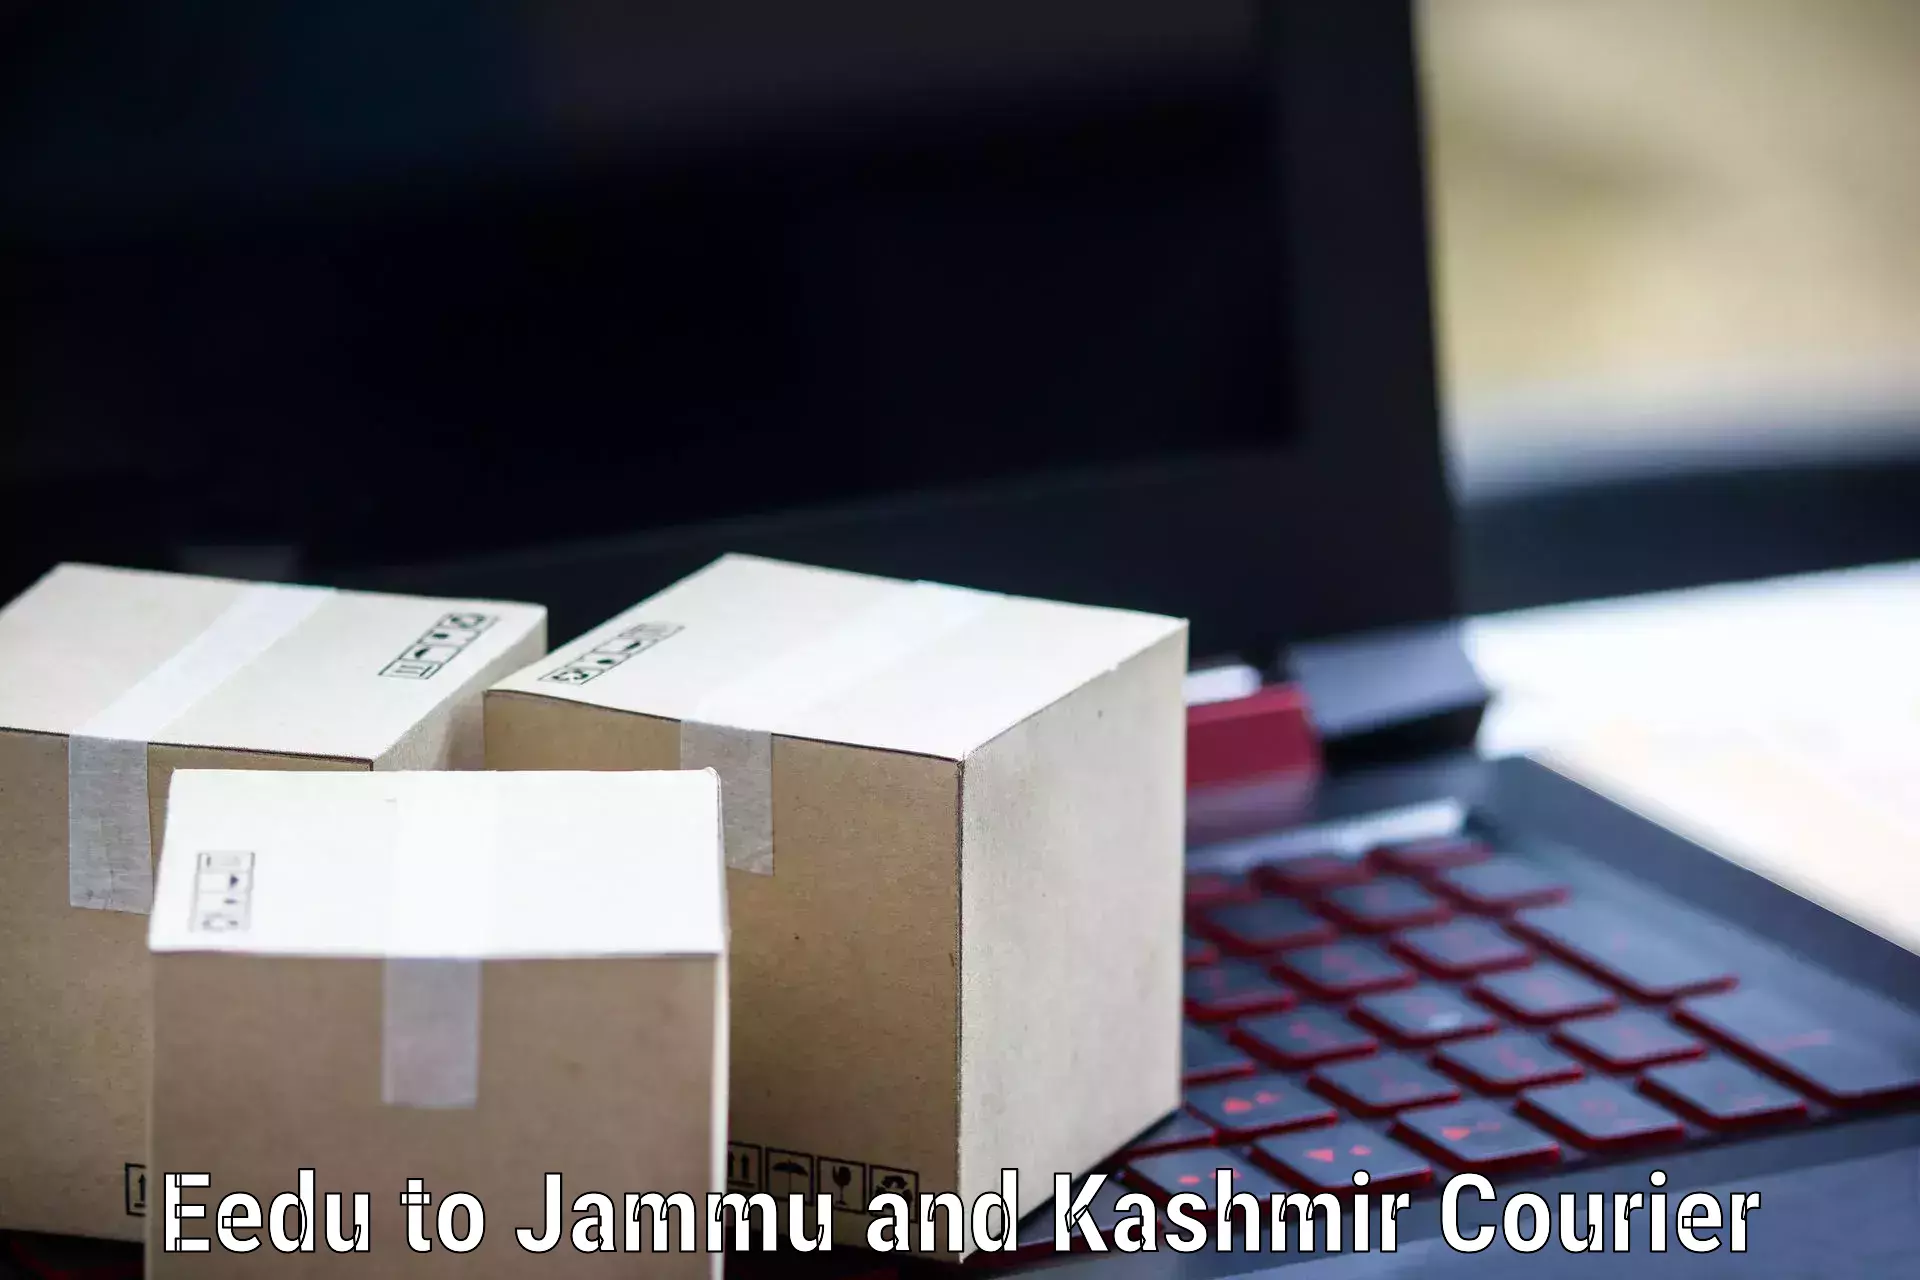 Modern courier technology Eedu to Srinagar Kashmir